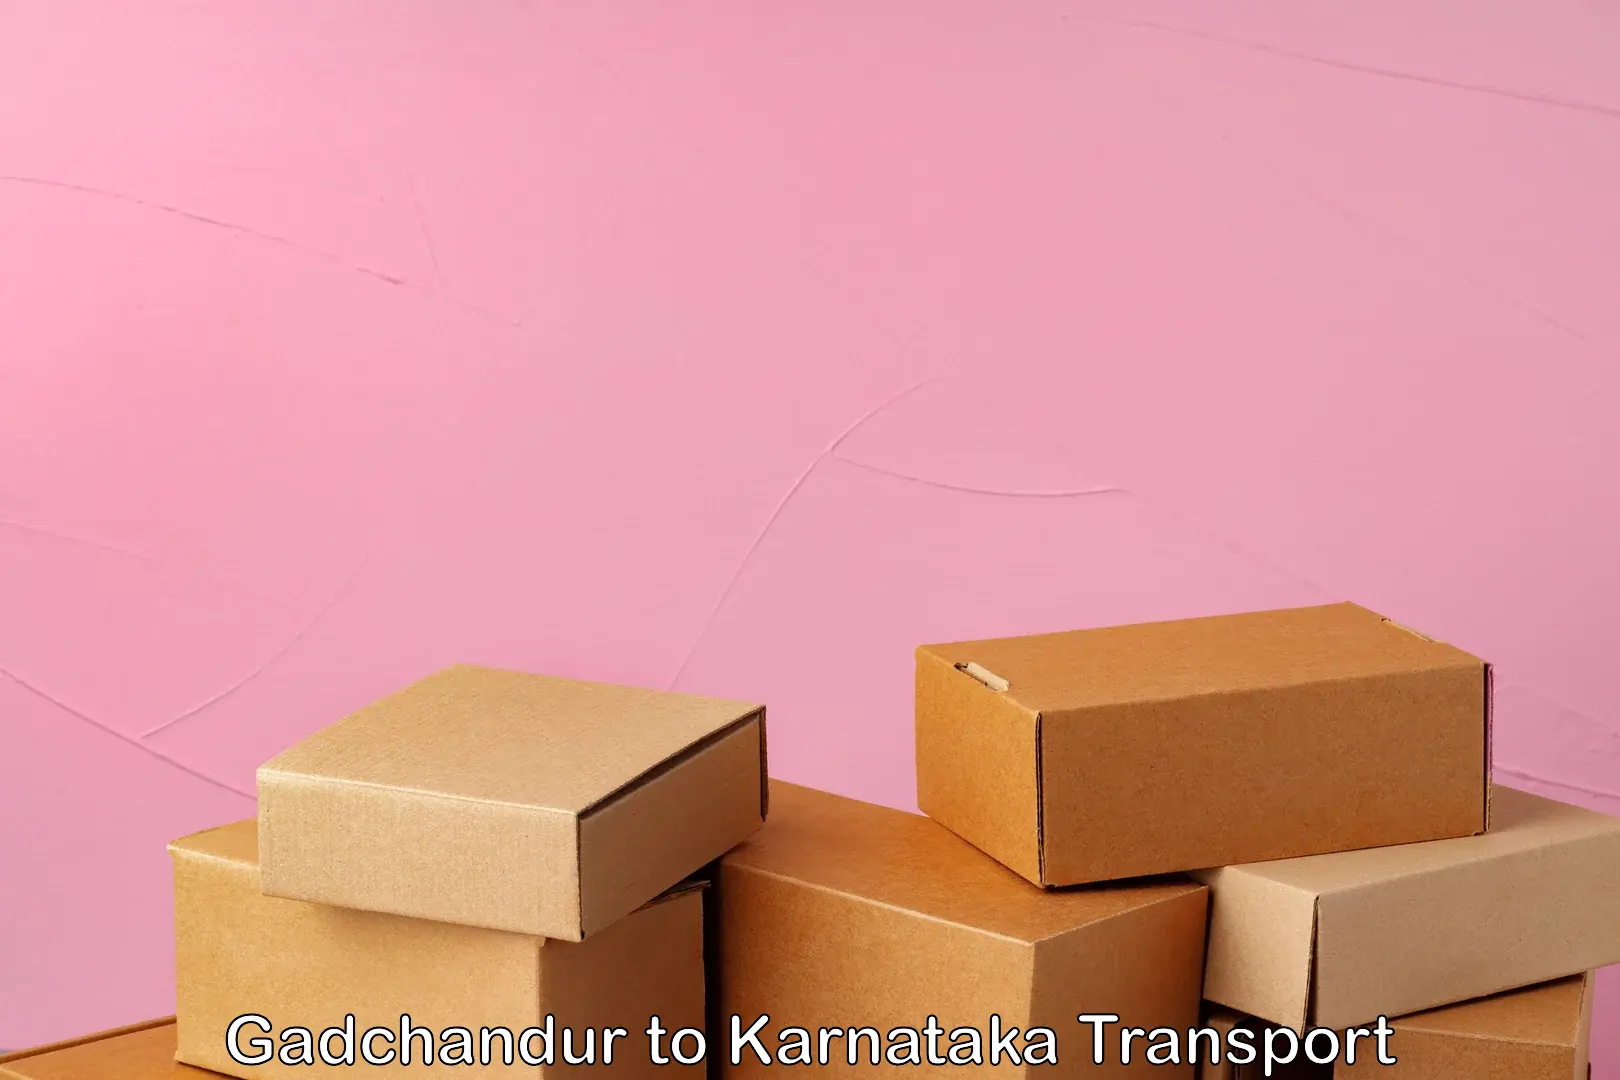 Cargo transport services Gadchandur to Karnataka